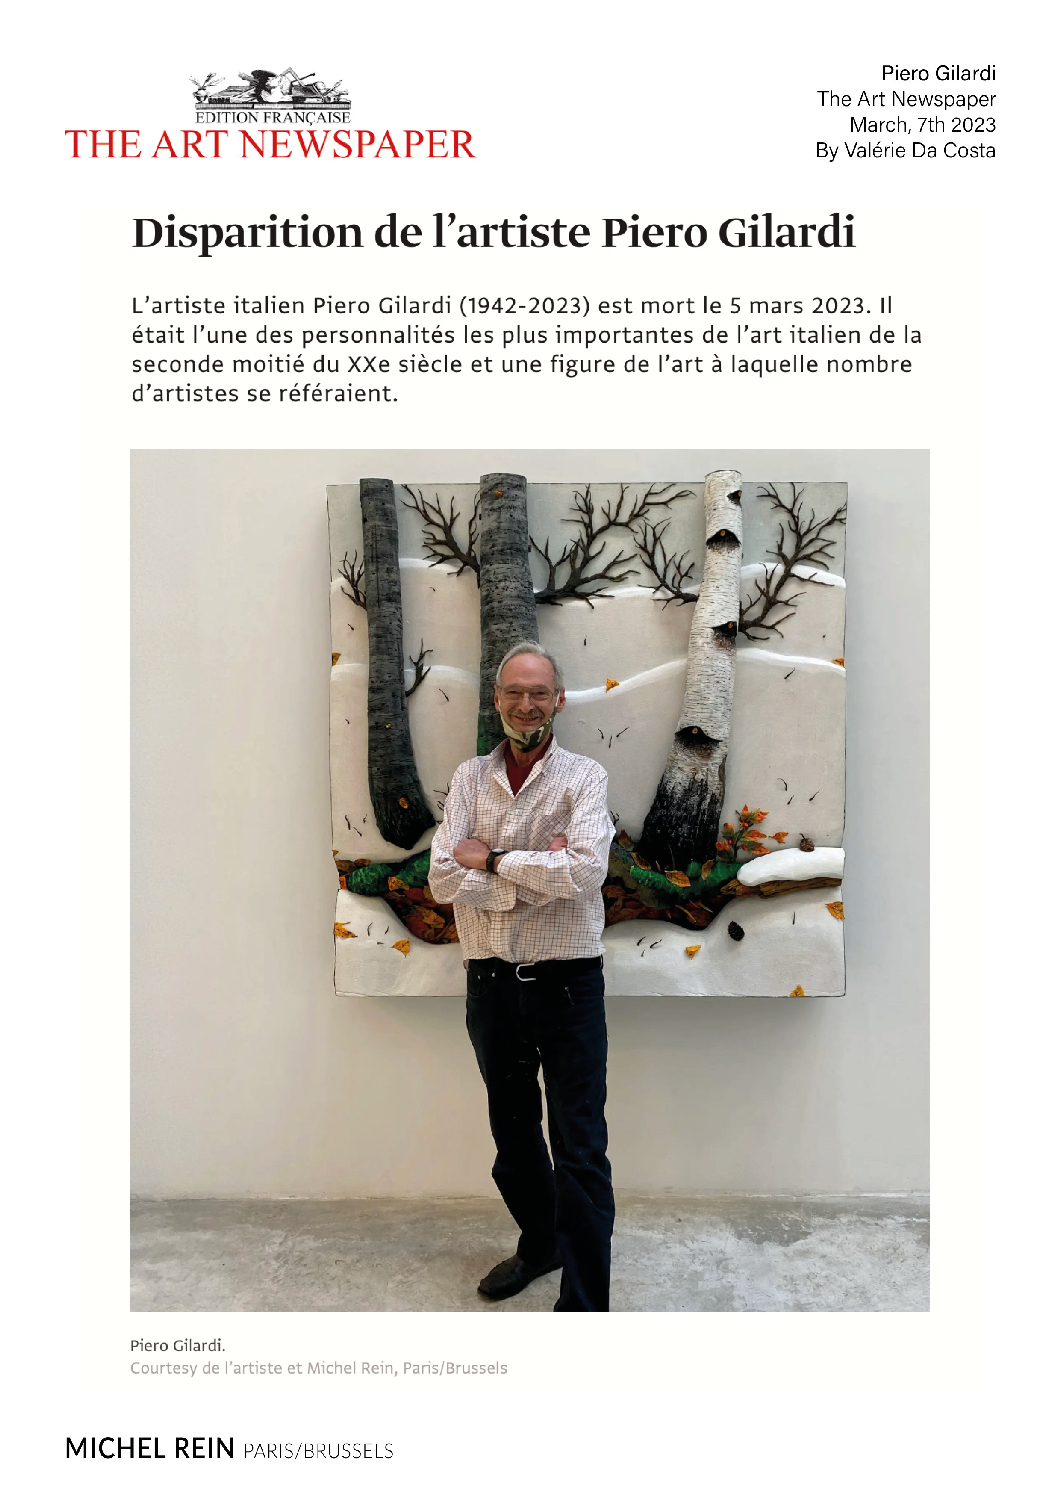 Disparition de l'artiste Piero Gilardi - The Art Newspaper